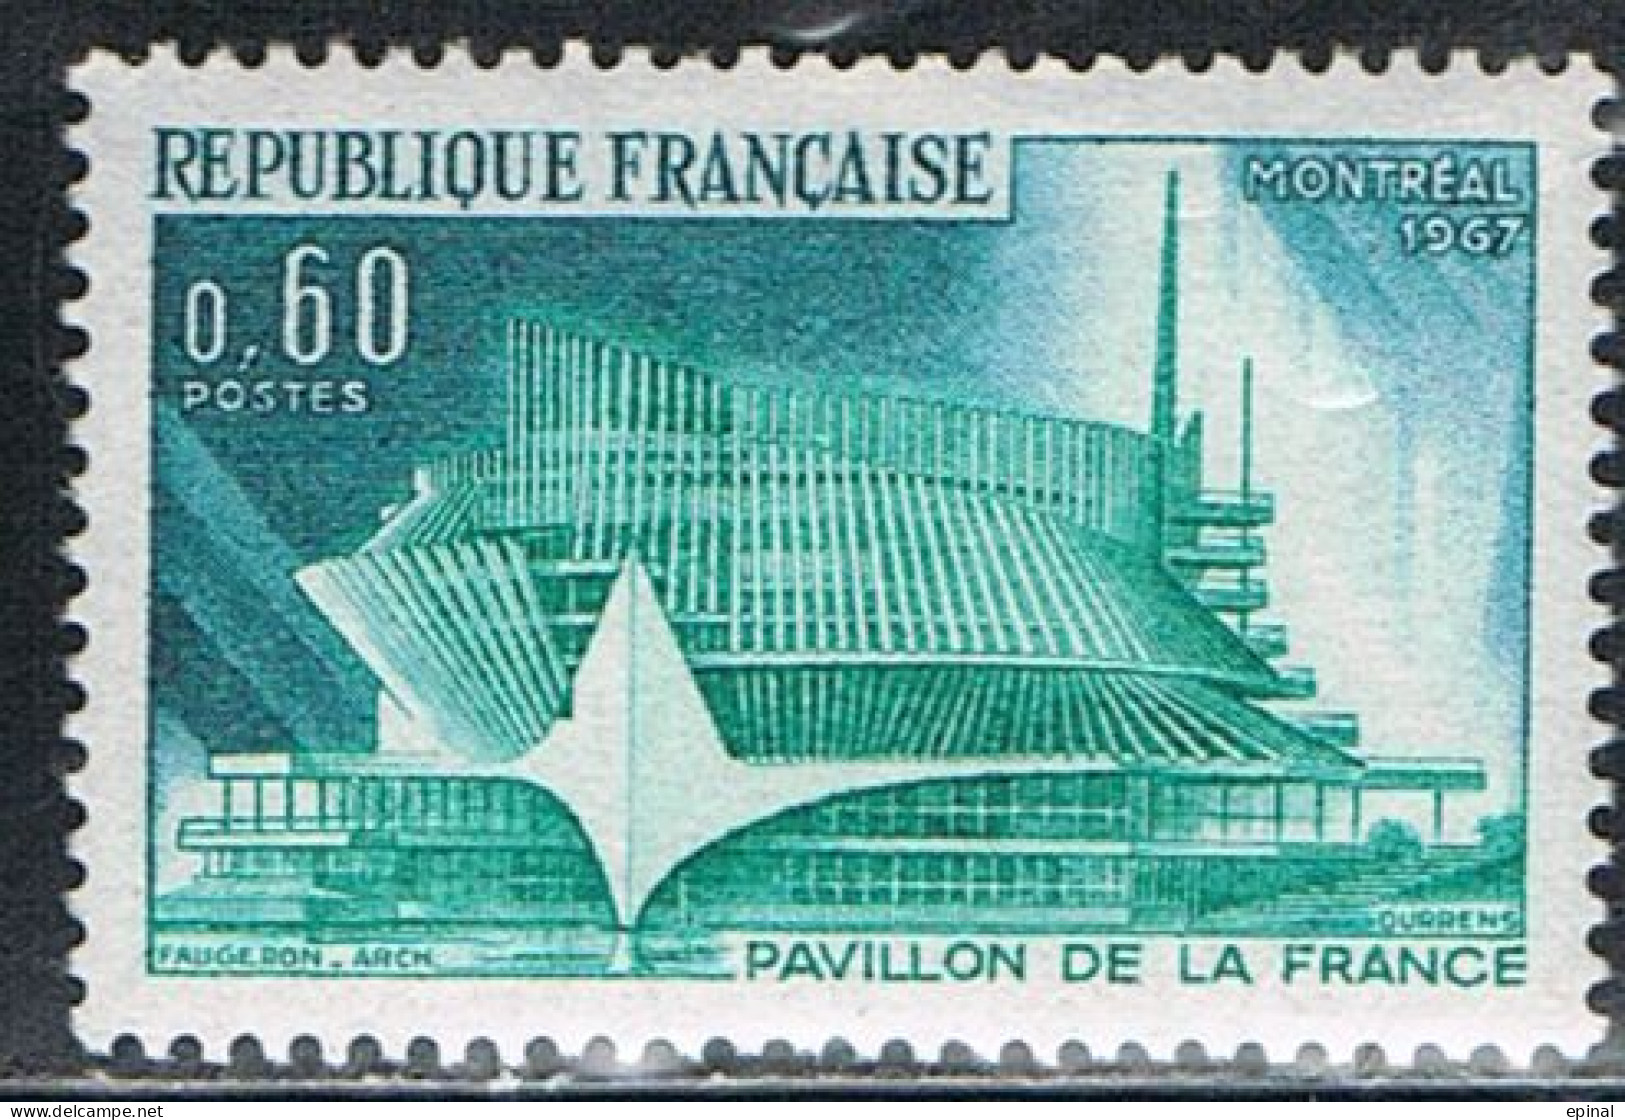 FRANCE : N° 1519 ** (Exposition Internationale De Montréal) - PRIX FIXE - - Neufs